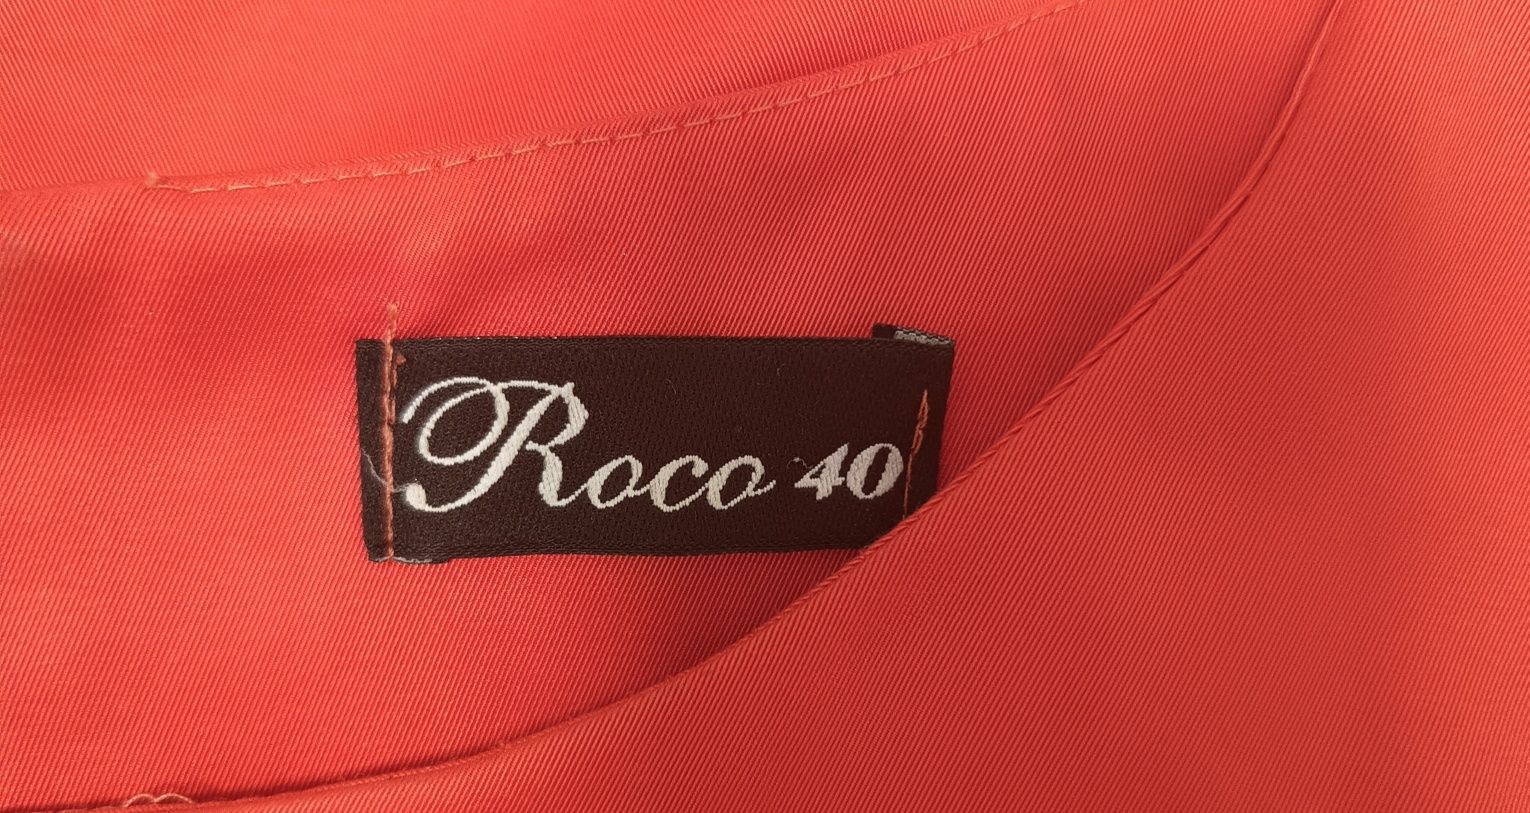 Sukienka firmy Roco roz. 40